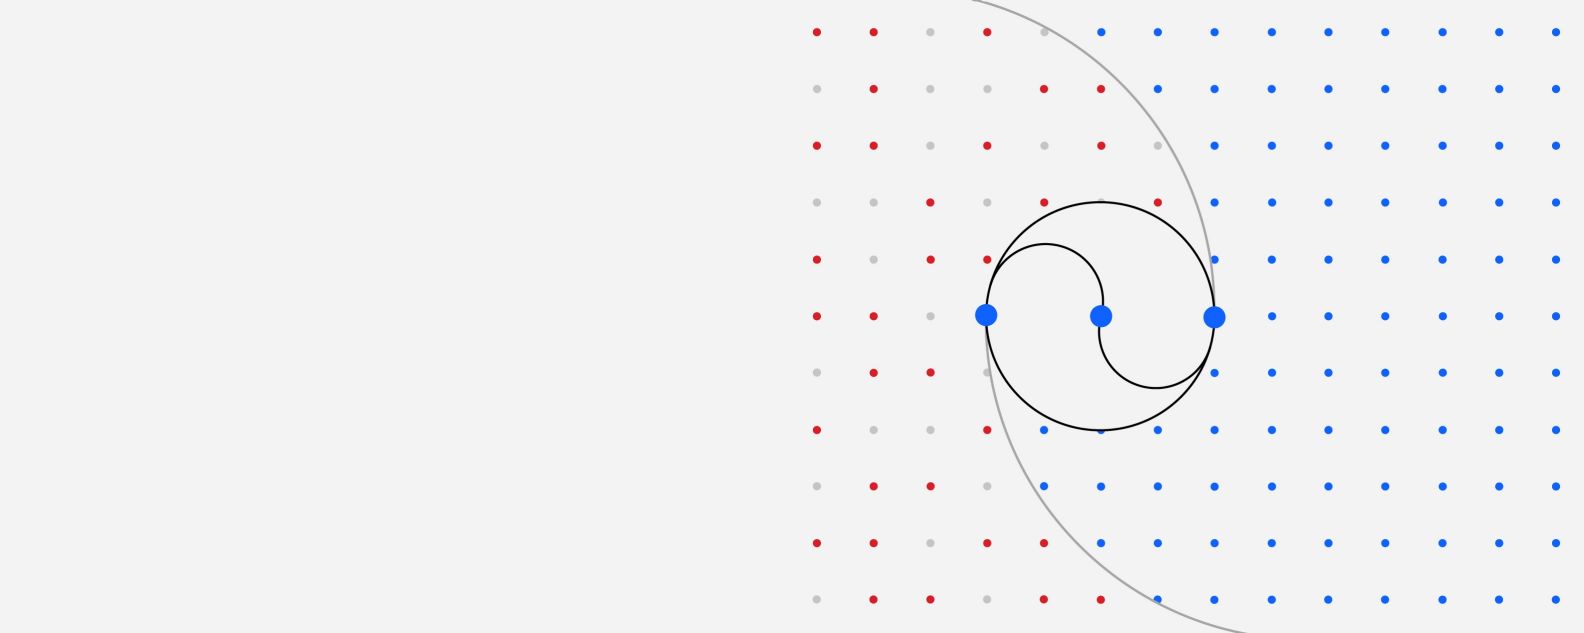 Darstellung eines Gitters aus farbigen Punkten, bei dem drei größere Punkte durch verschiedene gebogene Linien miteinander verbunden sind